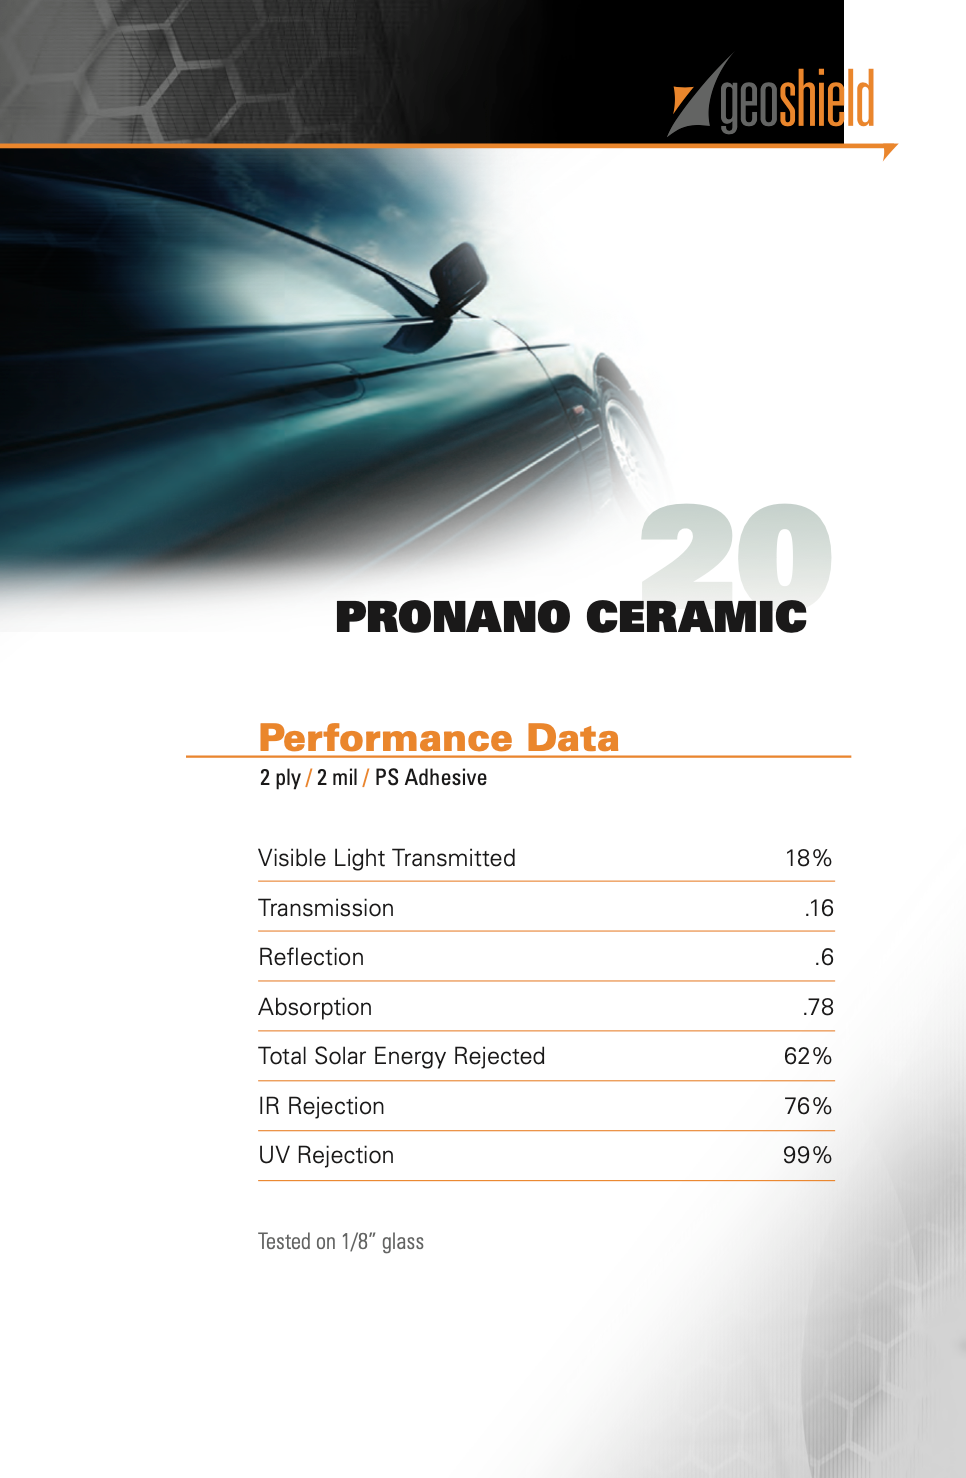 Performance data for Pro Nano 20%